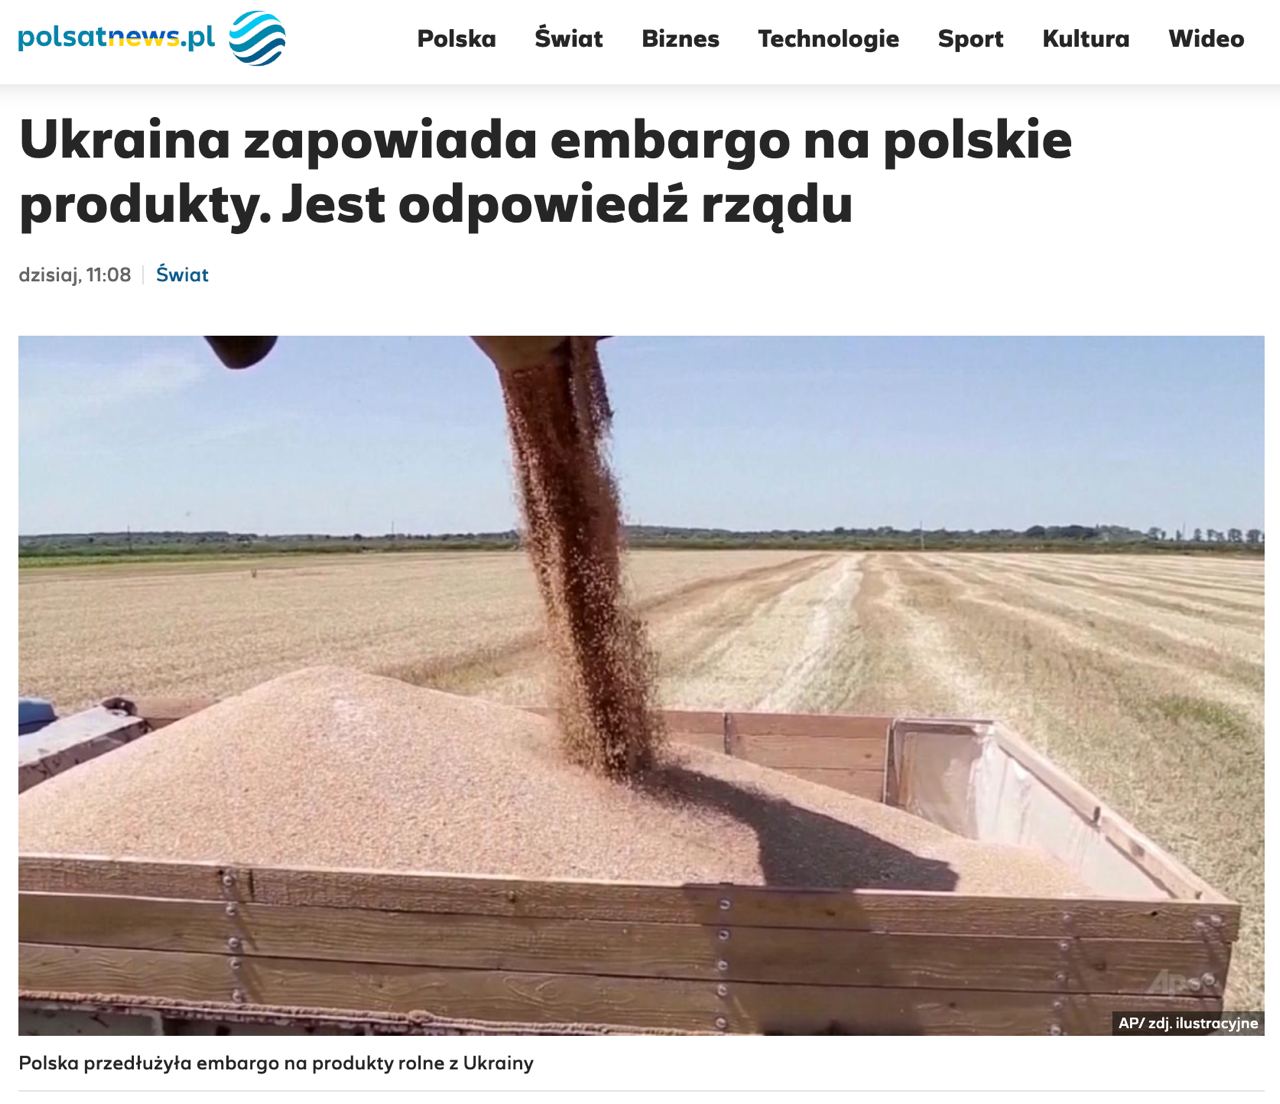 Польща погрожувала розширити ембарго українських продуктів